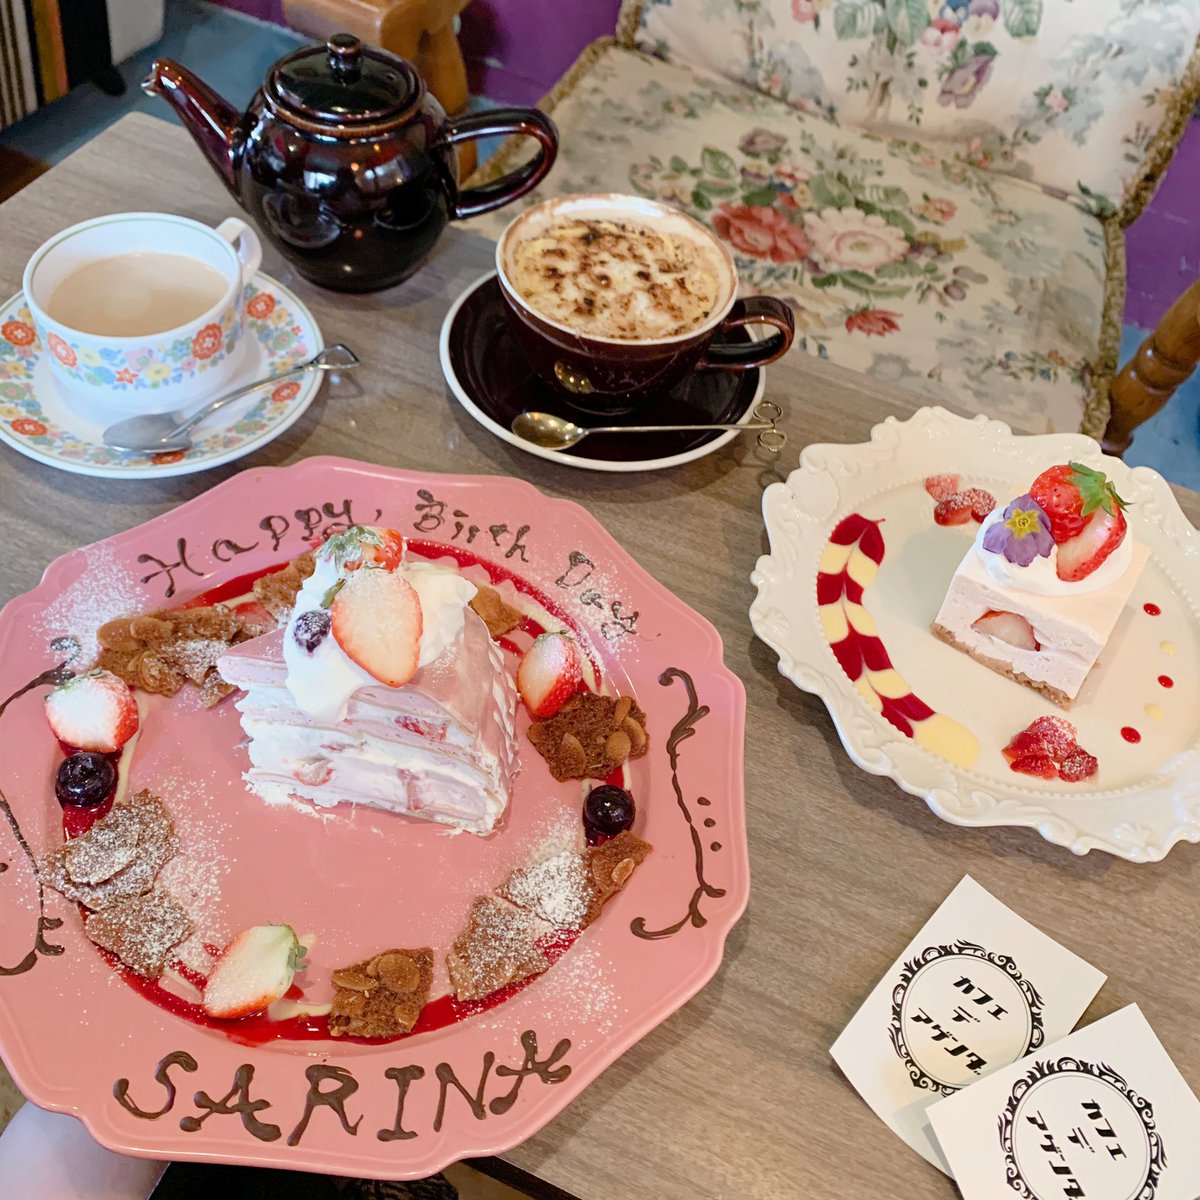 Sarina オシャレなカフェでサプライズされた プレゼントも欲しがってたやつばっかりで あこちゃんありがとうすぎる Kobe Cafedeagenda Cafe Cake Milkrape Birthday 神戸 カフェ カフェデアゲンダ ケーキ ミルクレープ 誕生日